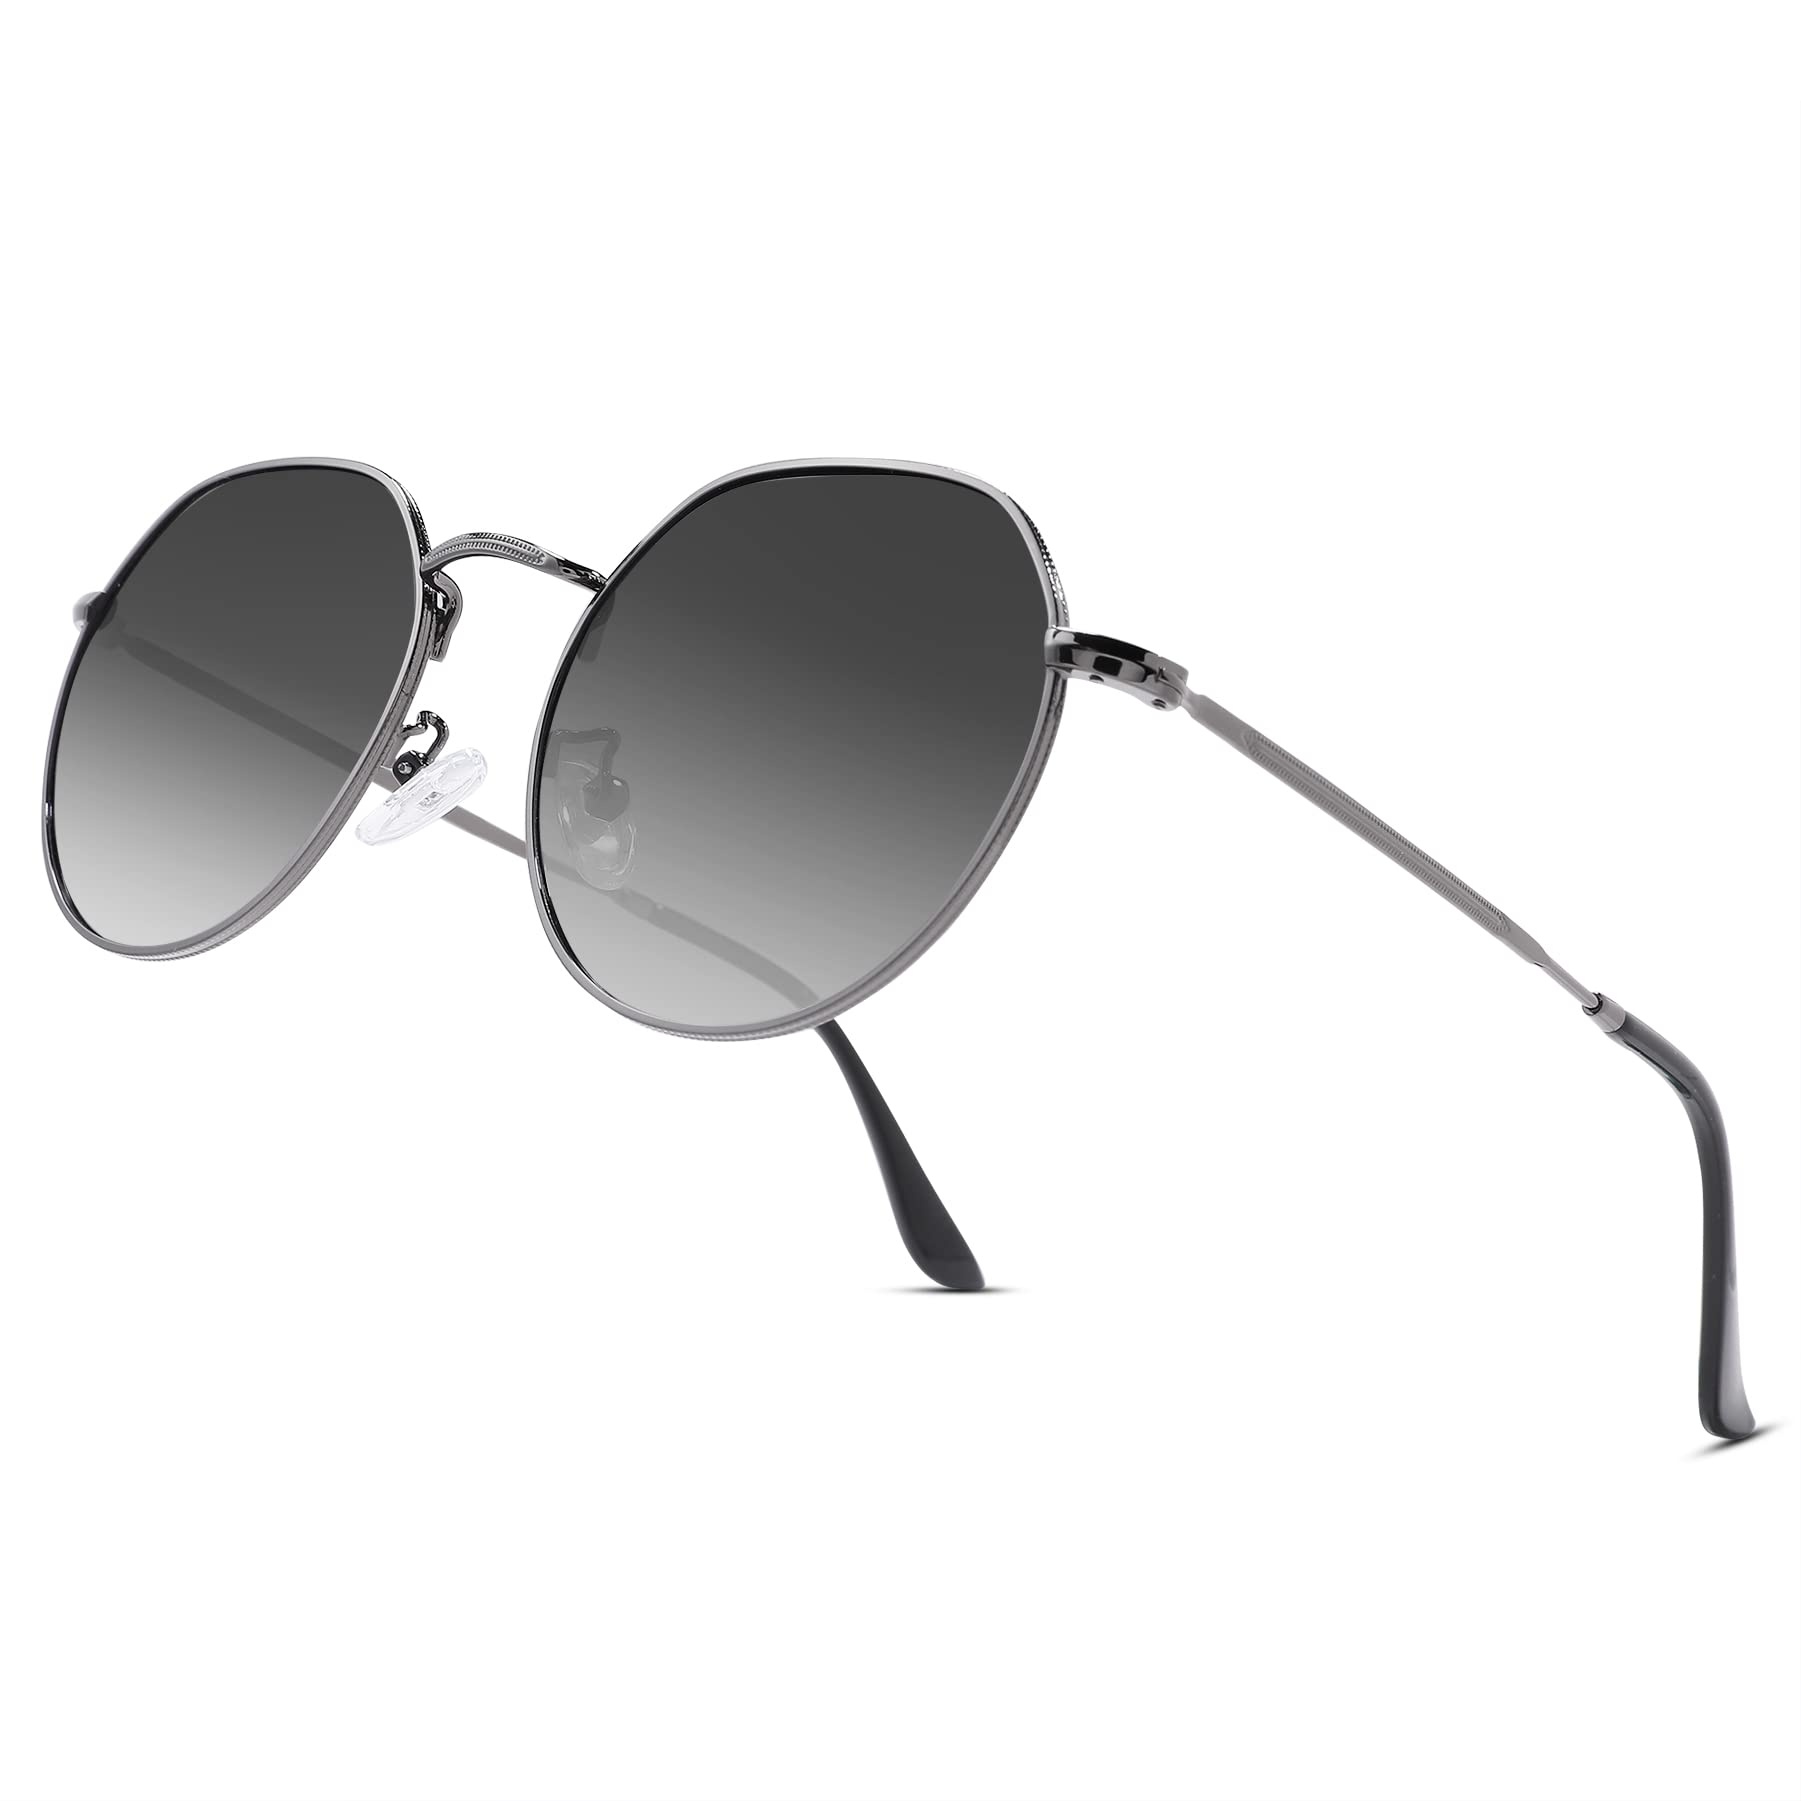 COASION Polarisierte Runde Retro Sonnenbrille Damen Herren Vintage Metallrahmen UV400 Schutz Lense für Frauen Männer